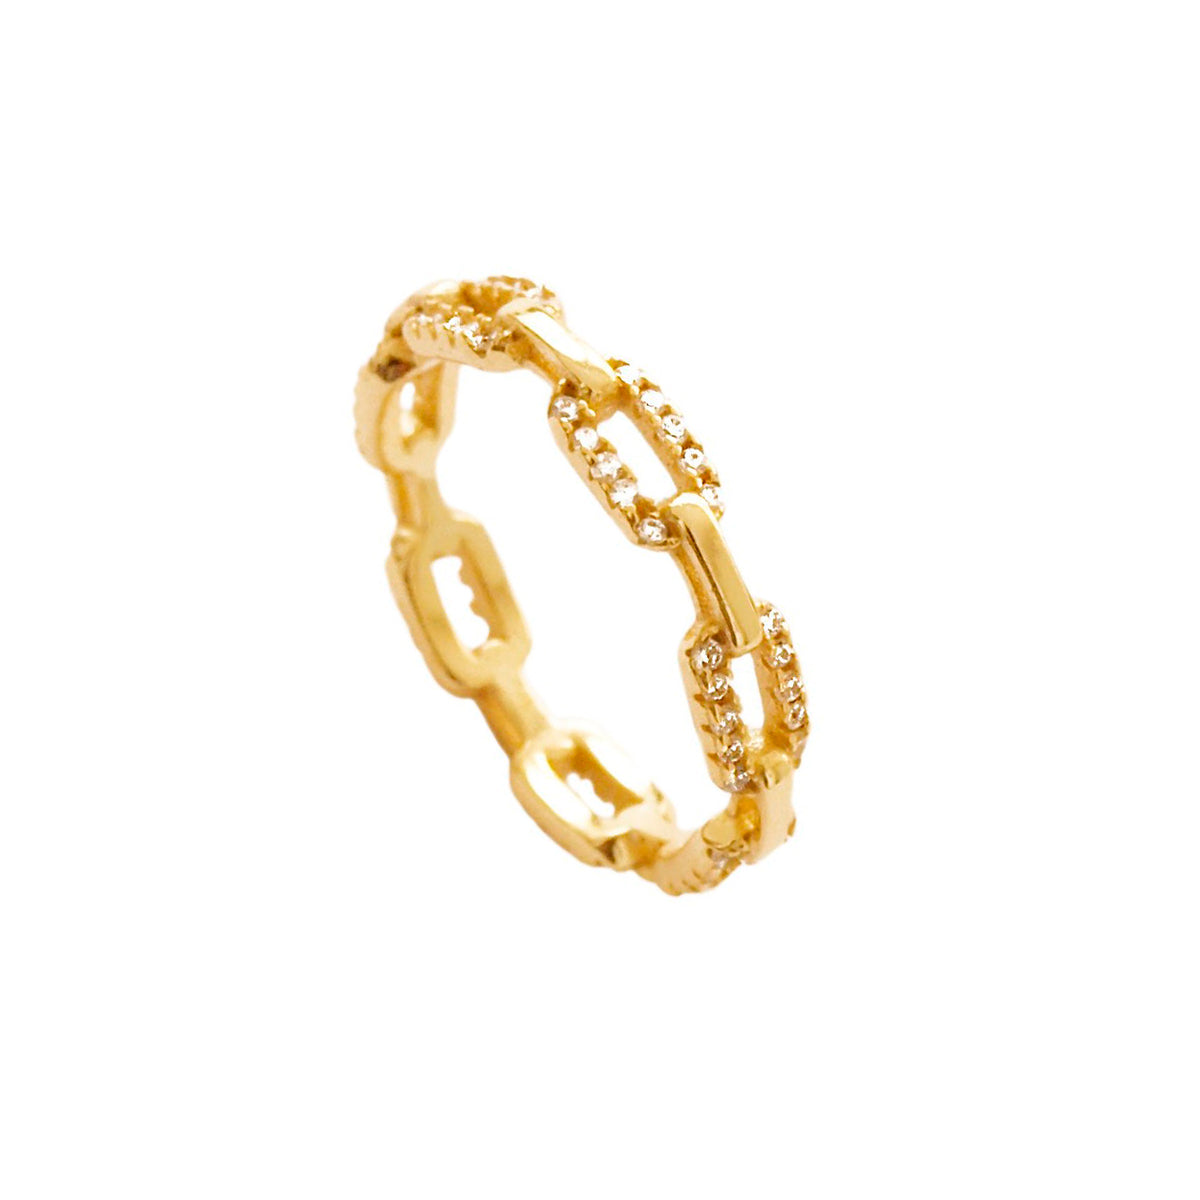 Zirconia chain gold